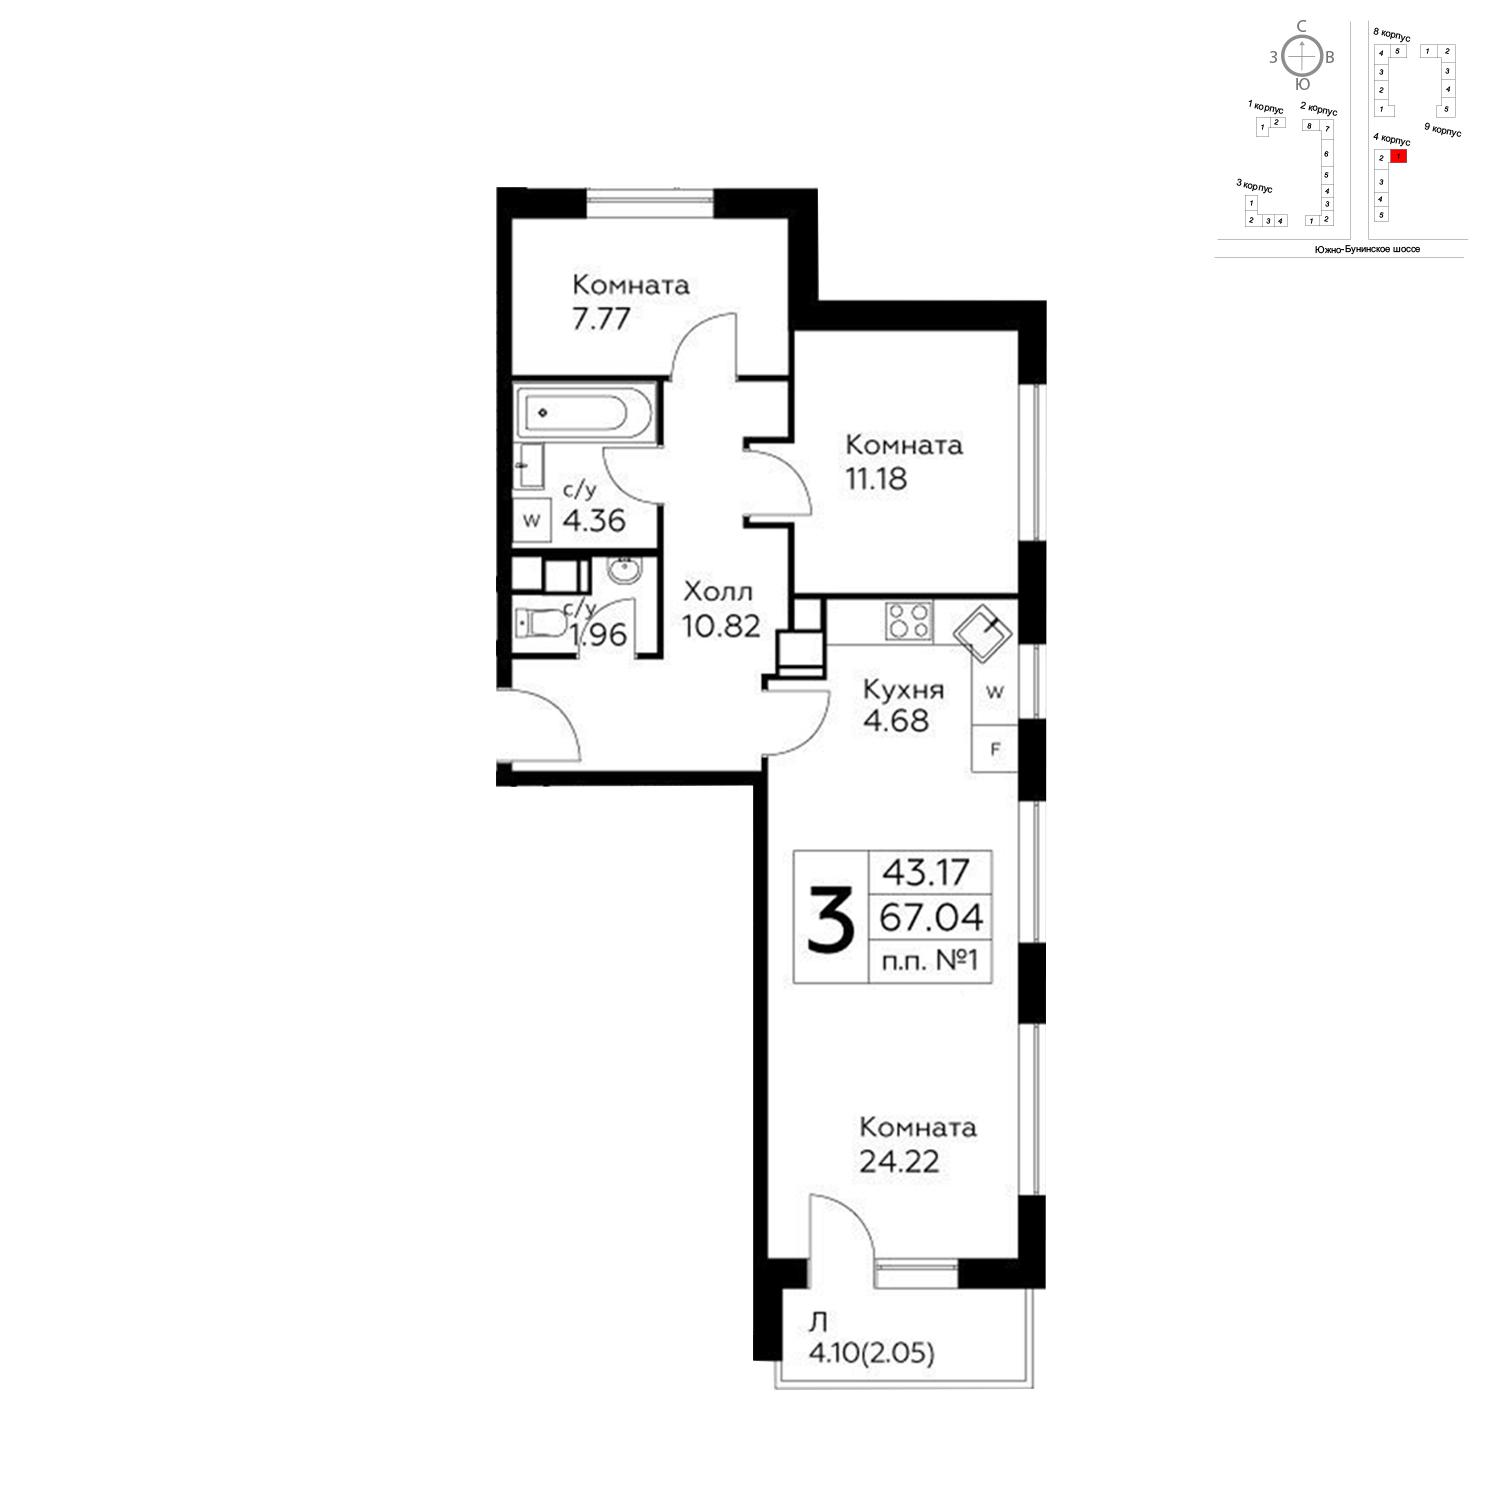 Продаётся 3-комнатная квартира в новостройке 67.0 кв.м. этаж 6/14 за 14 064 740 руб 